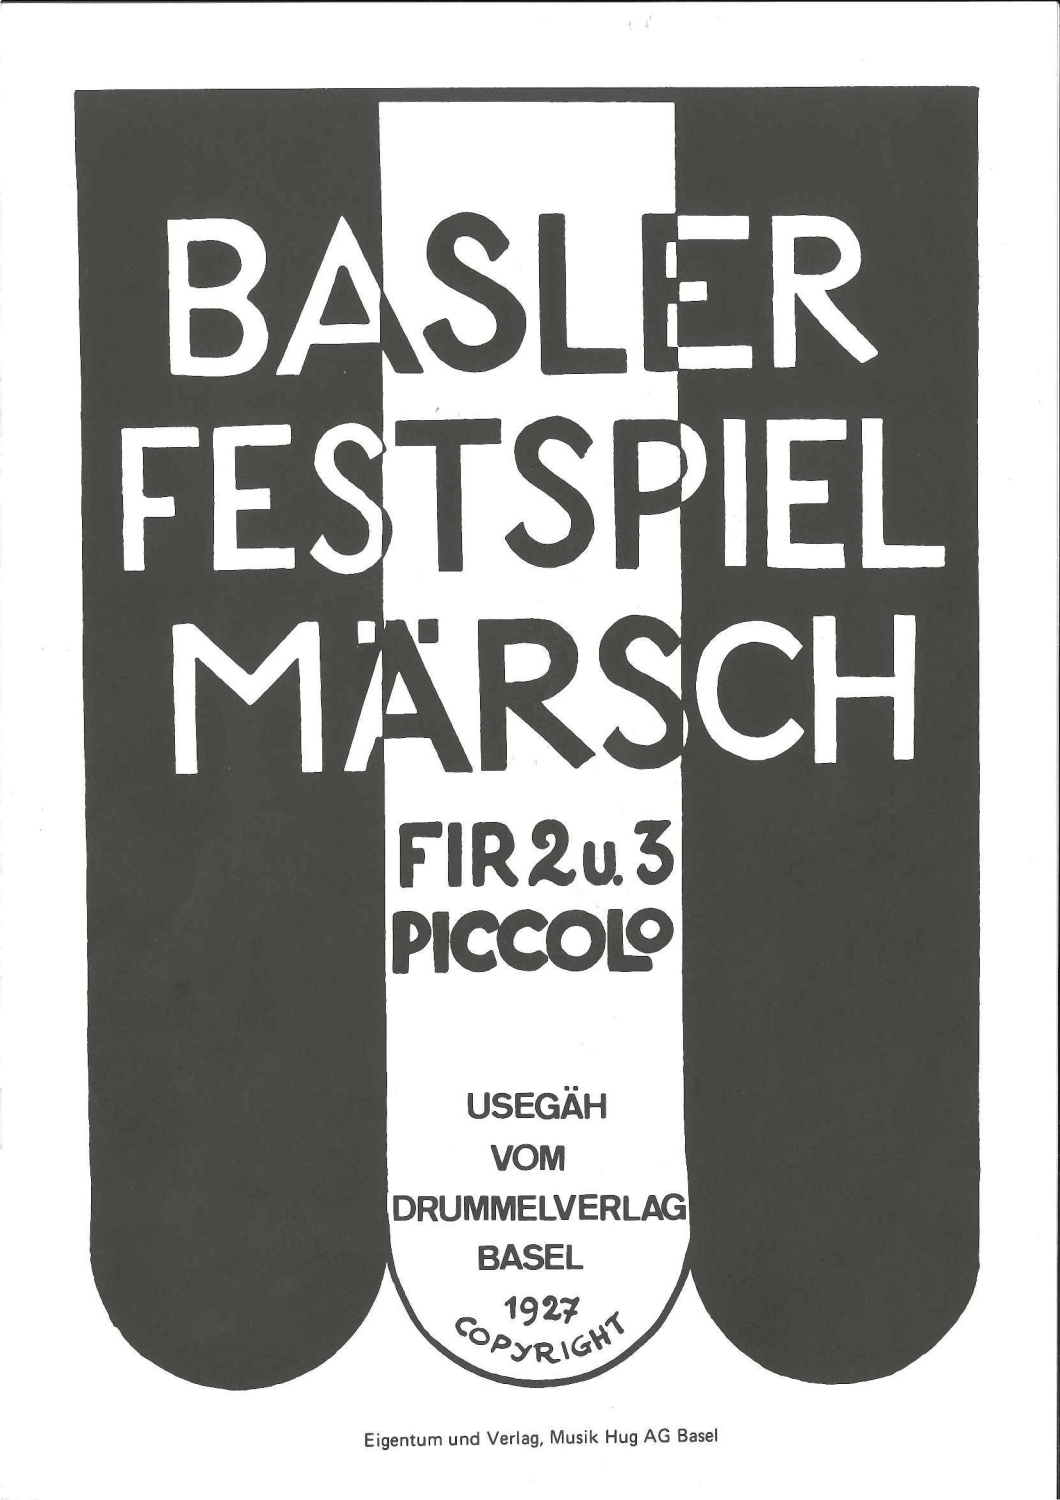 Basler-Festspielmaersche-Picc-_0001.JPG